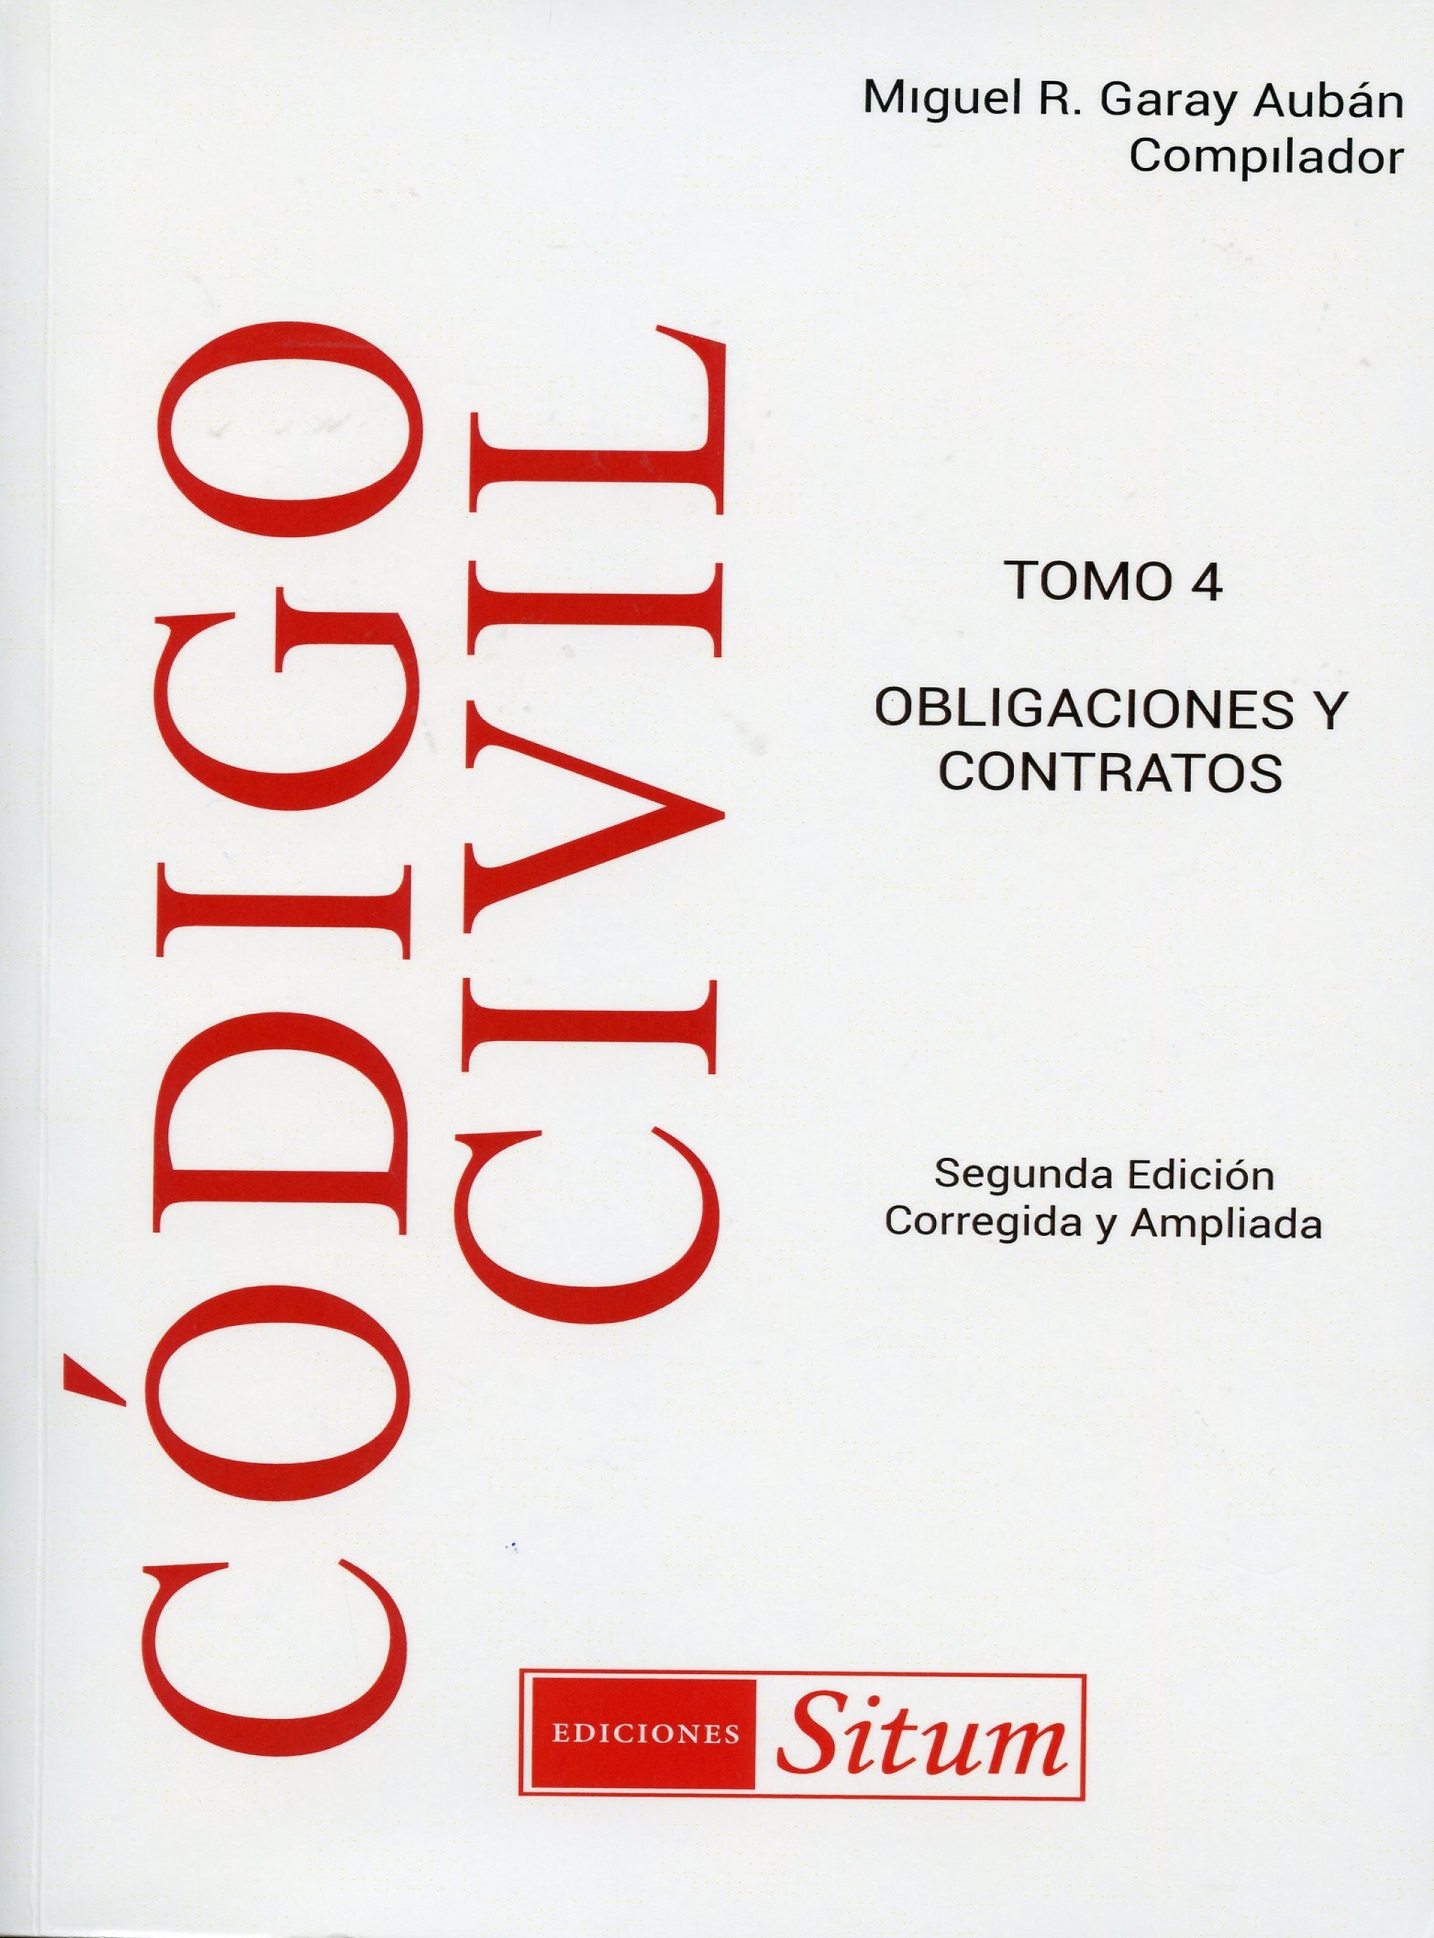 Libro sobre el Código Civil de Puerto Rico